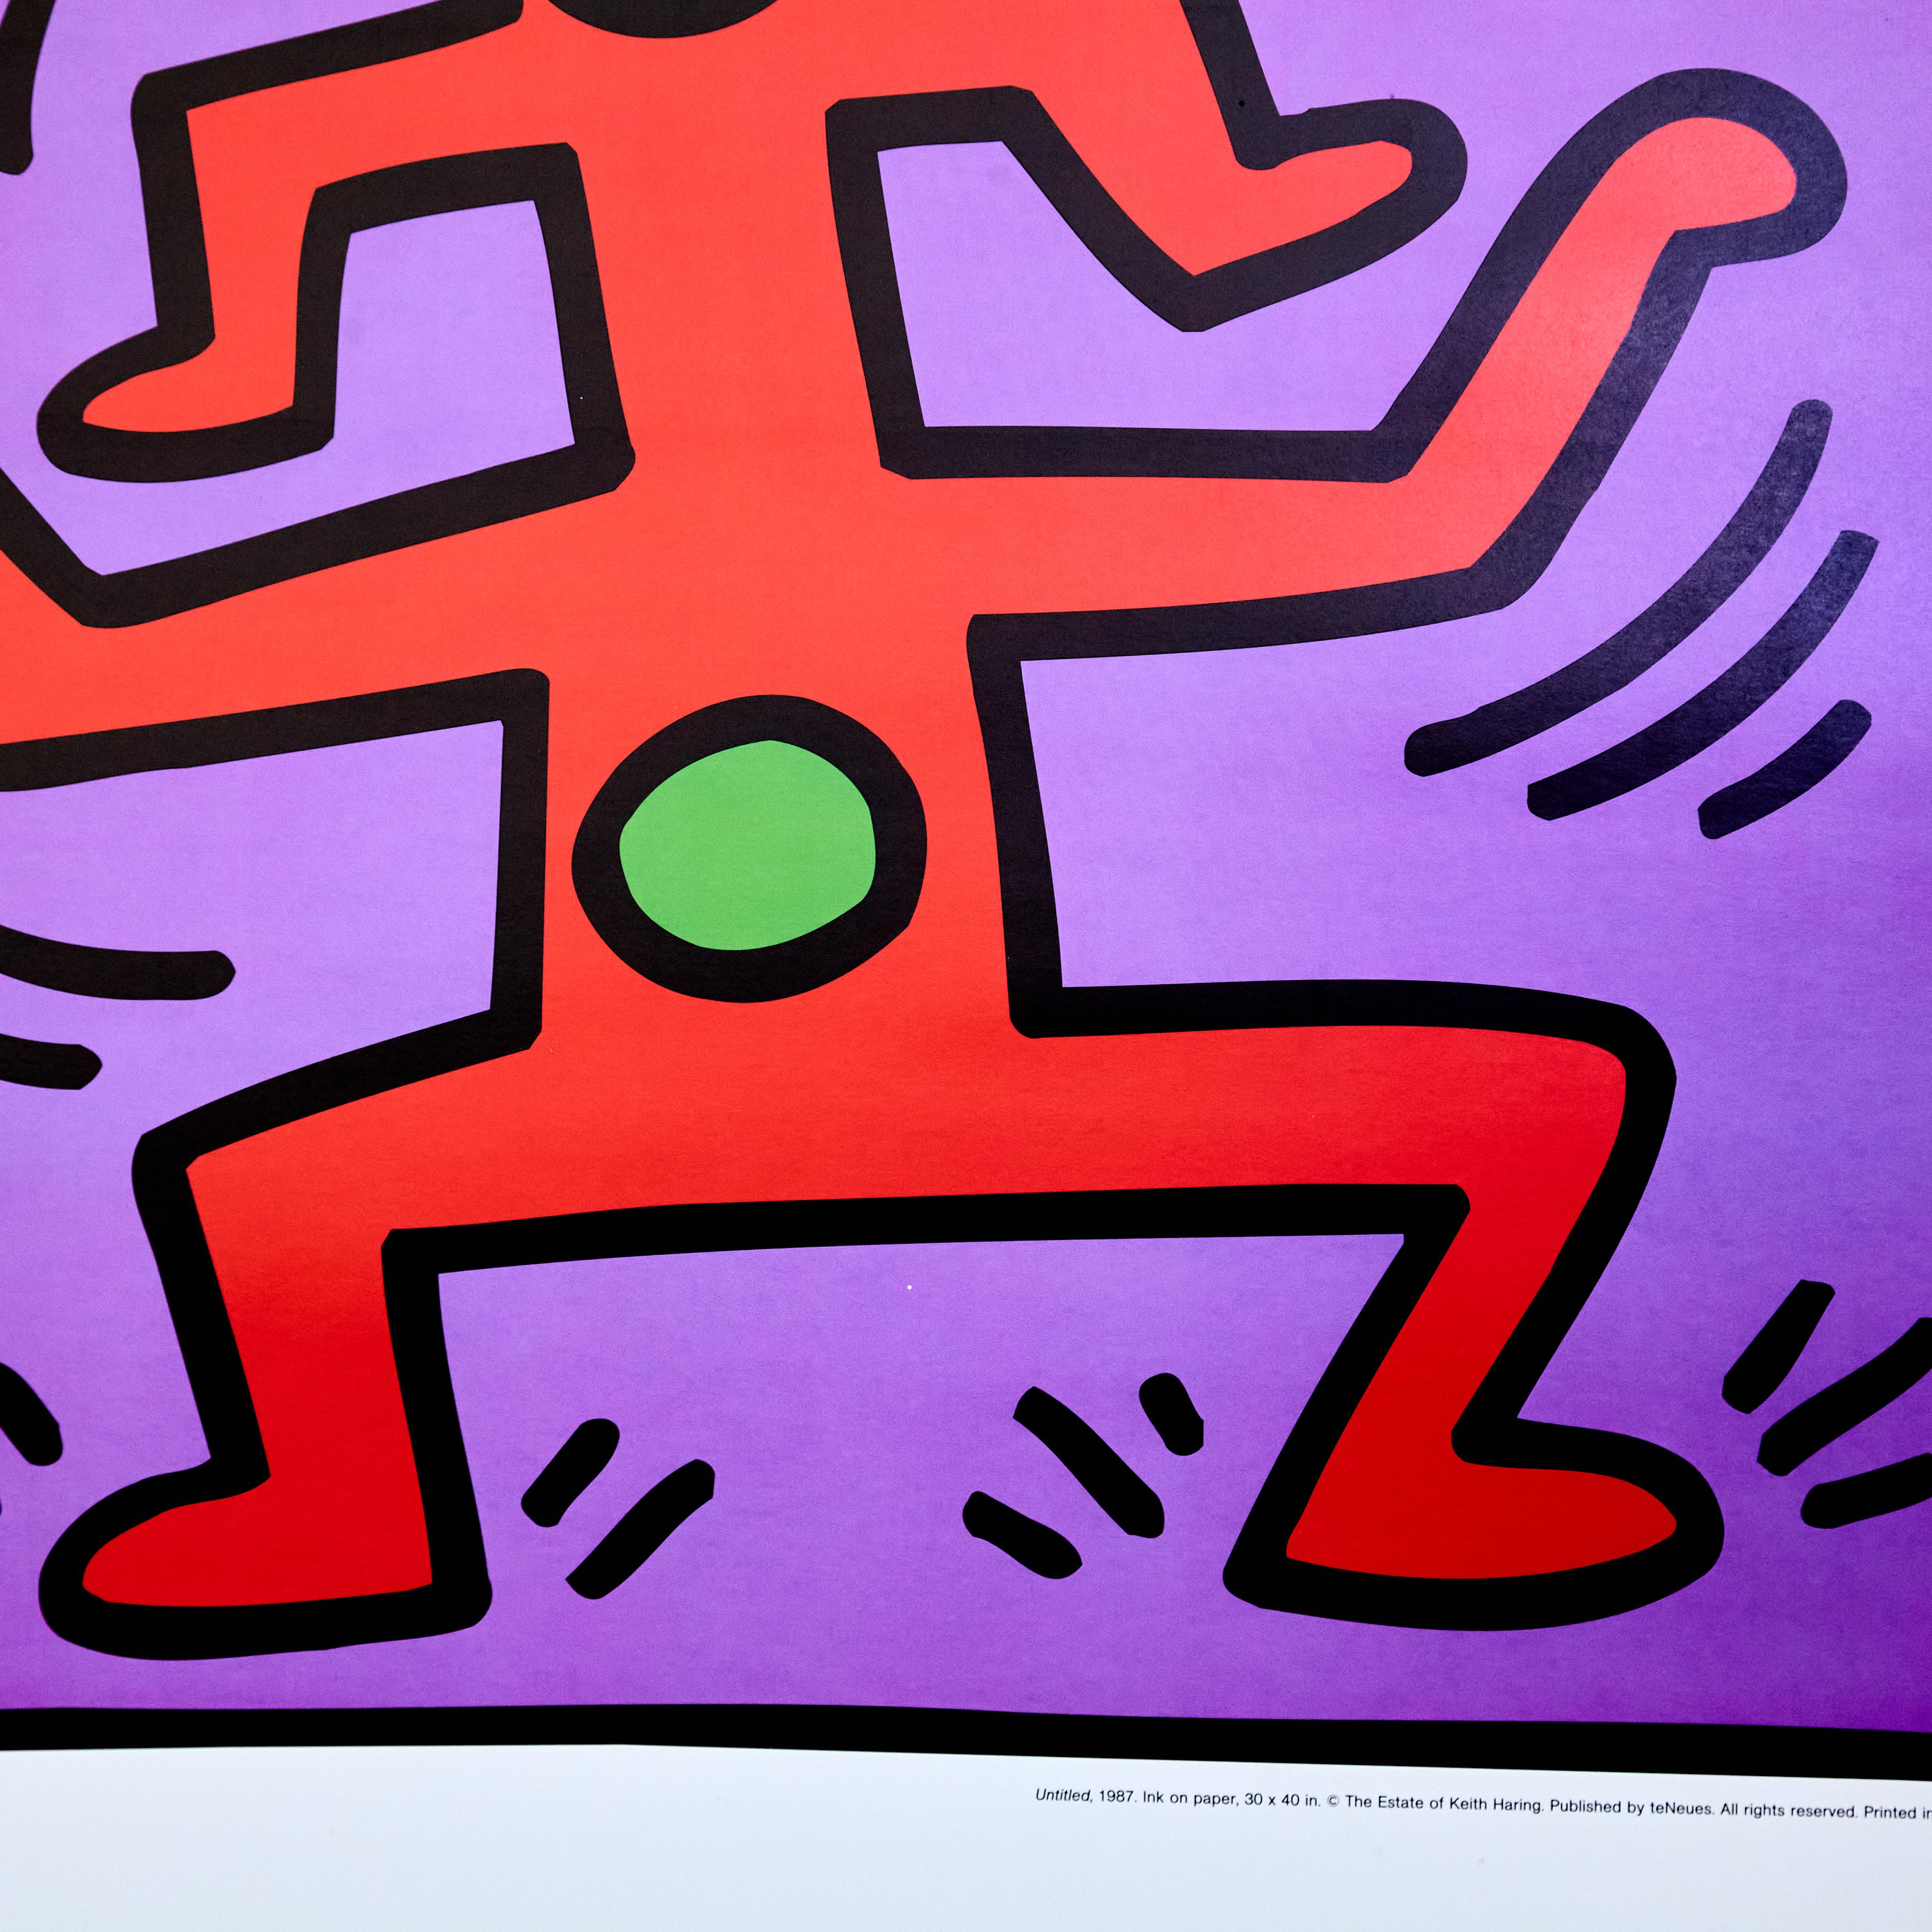 Lithographie imprimée de Keith Haring réalisée en 1987 par teNeues.

Fabriqué en Allemagne, vers 1980.

En état d'origine avec une usure mineure conforme à l'âge et à l'utilisation, préservant une belle patine.

Matériaux : 
Papier

Dimensions : 
D